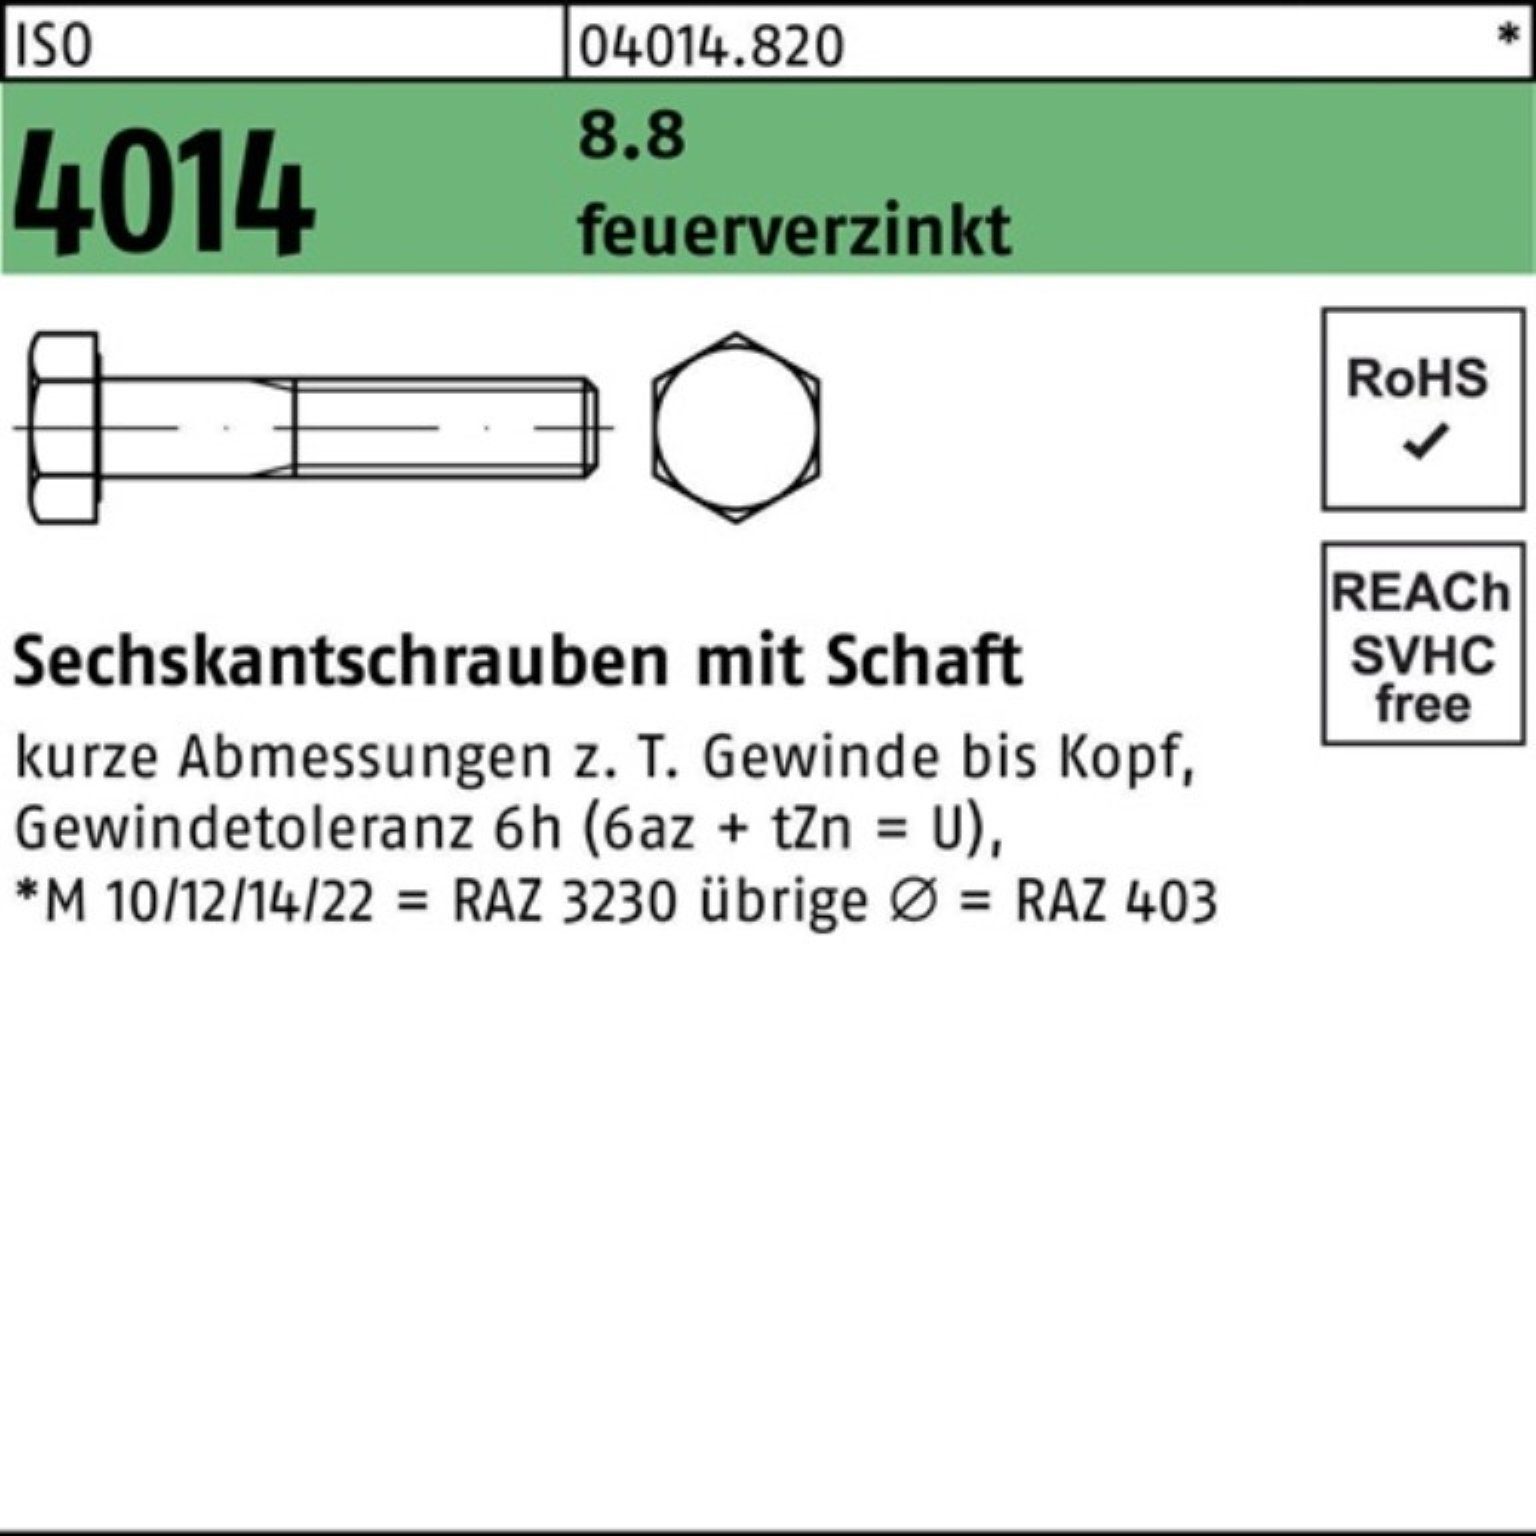 Bufab Sechskantschraube 100er Pack Sechskantschraube ISO 4014 Schaft M27x 90 8.8 feuerverz. 10